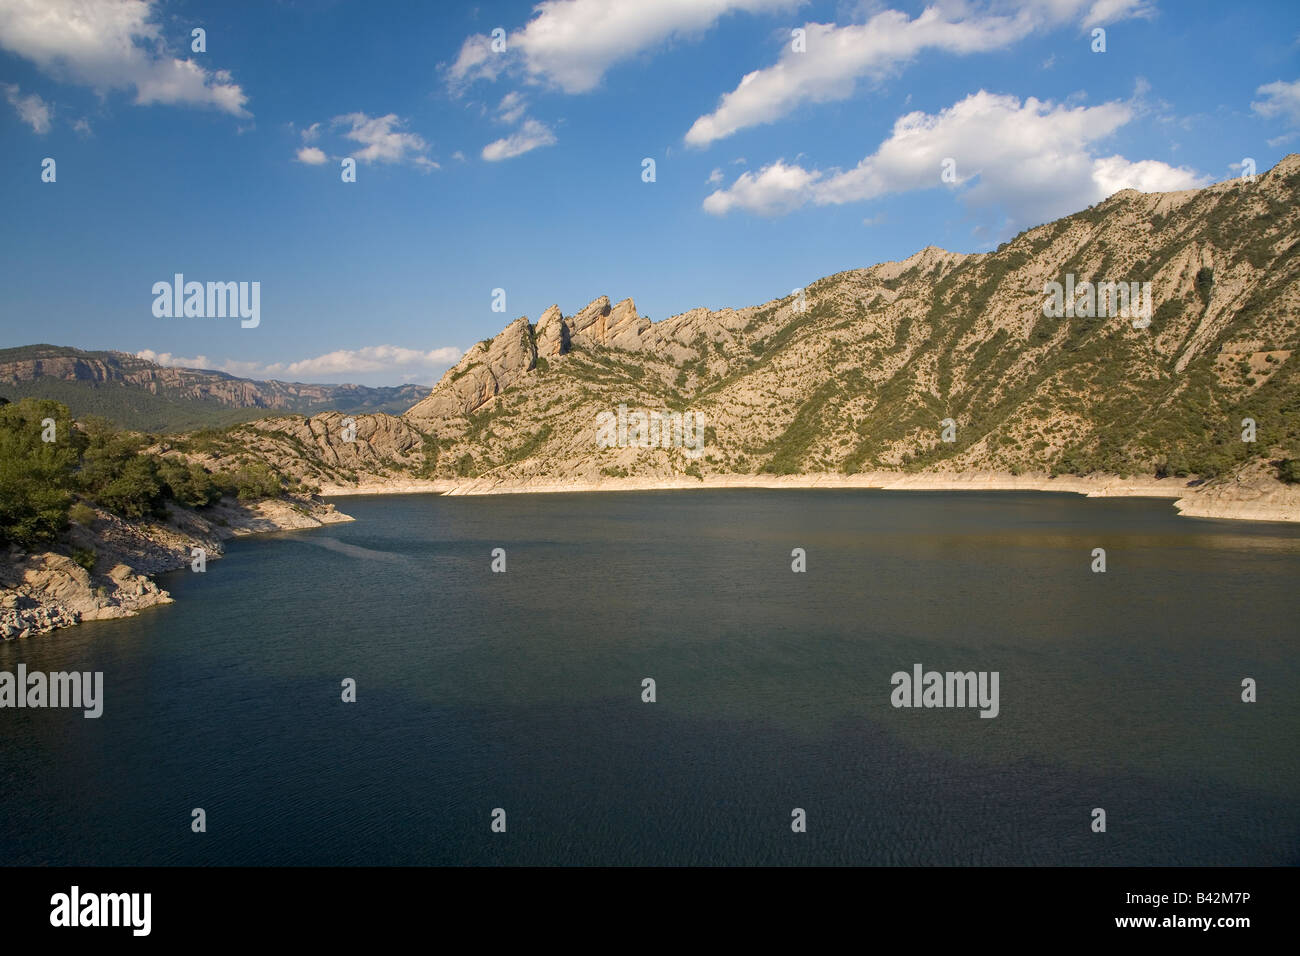 Wasser-Reservoir in den Pyrenäen von Spanien in der Nähe von La Seu D'urgell, (Sa Seu d'Urell) in Katalonien, Spanien Stockfoto